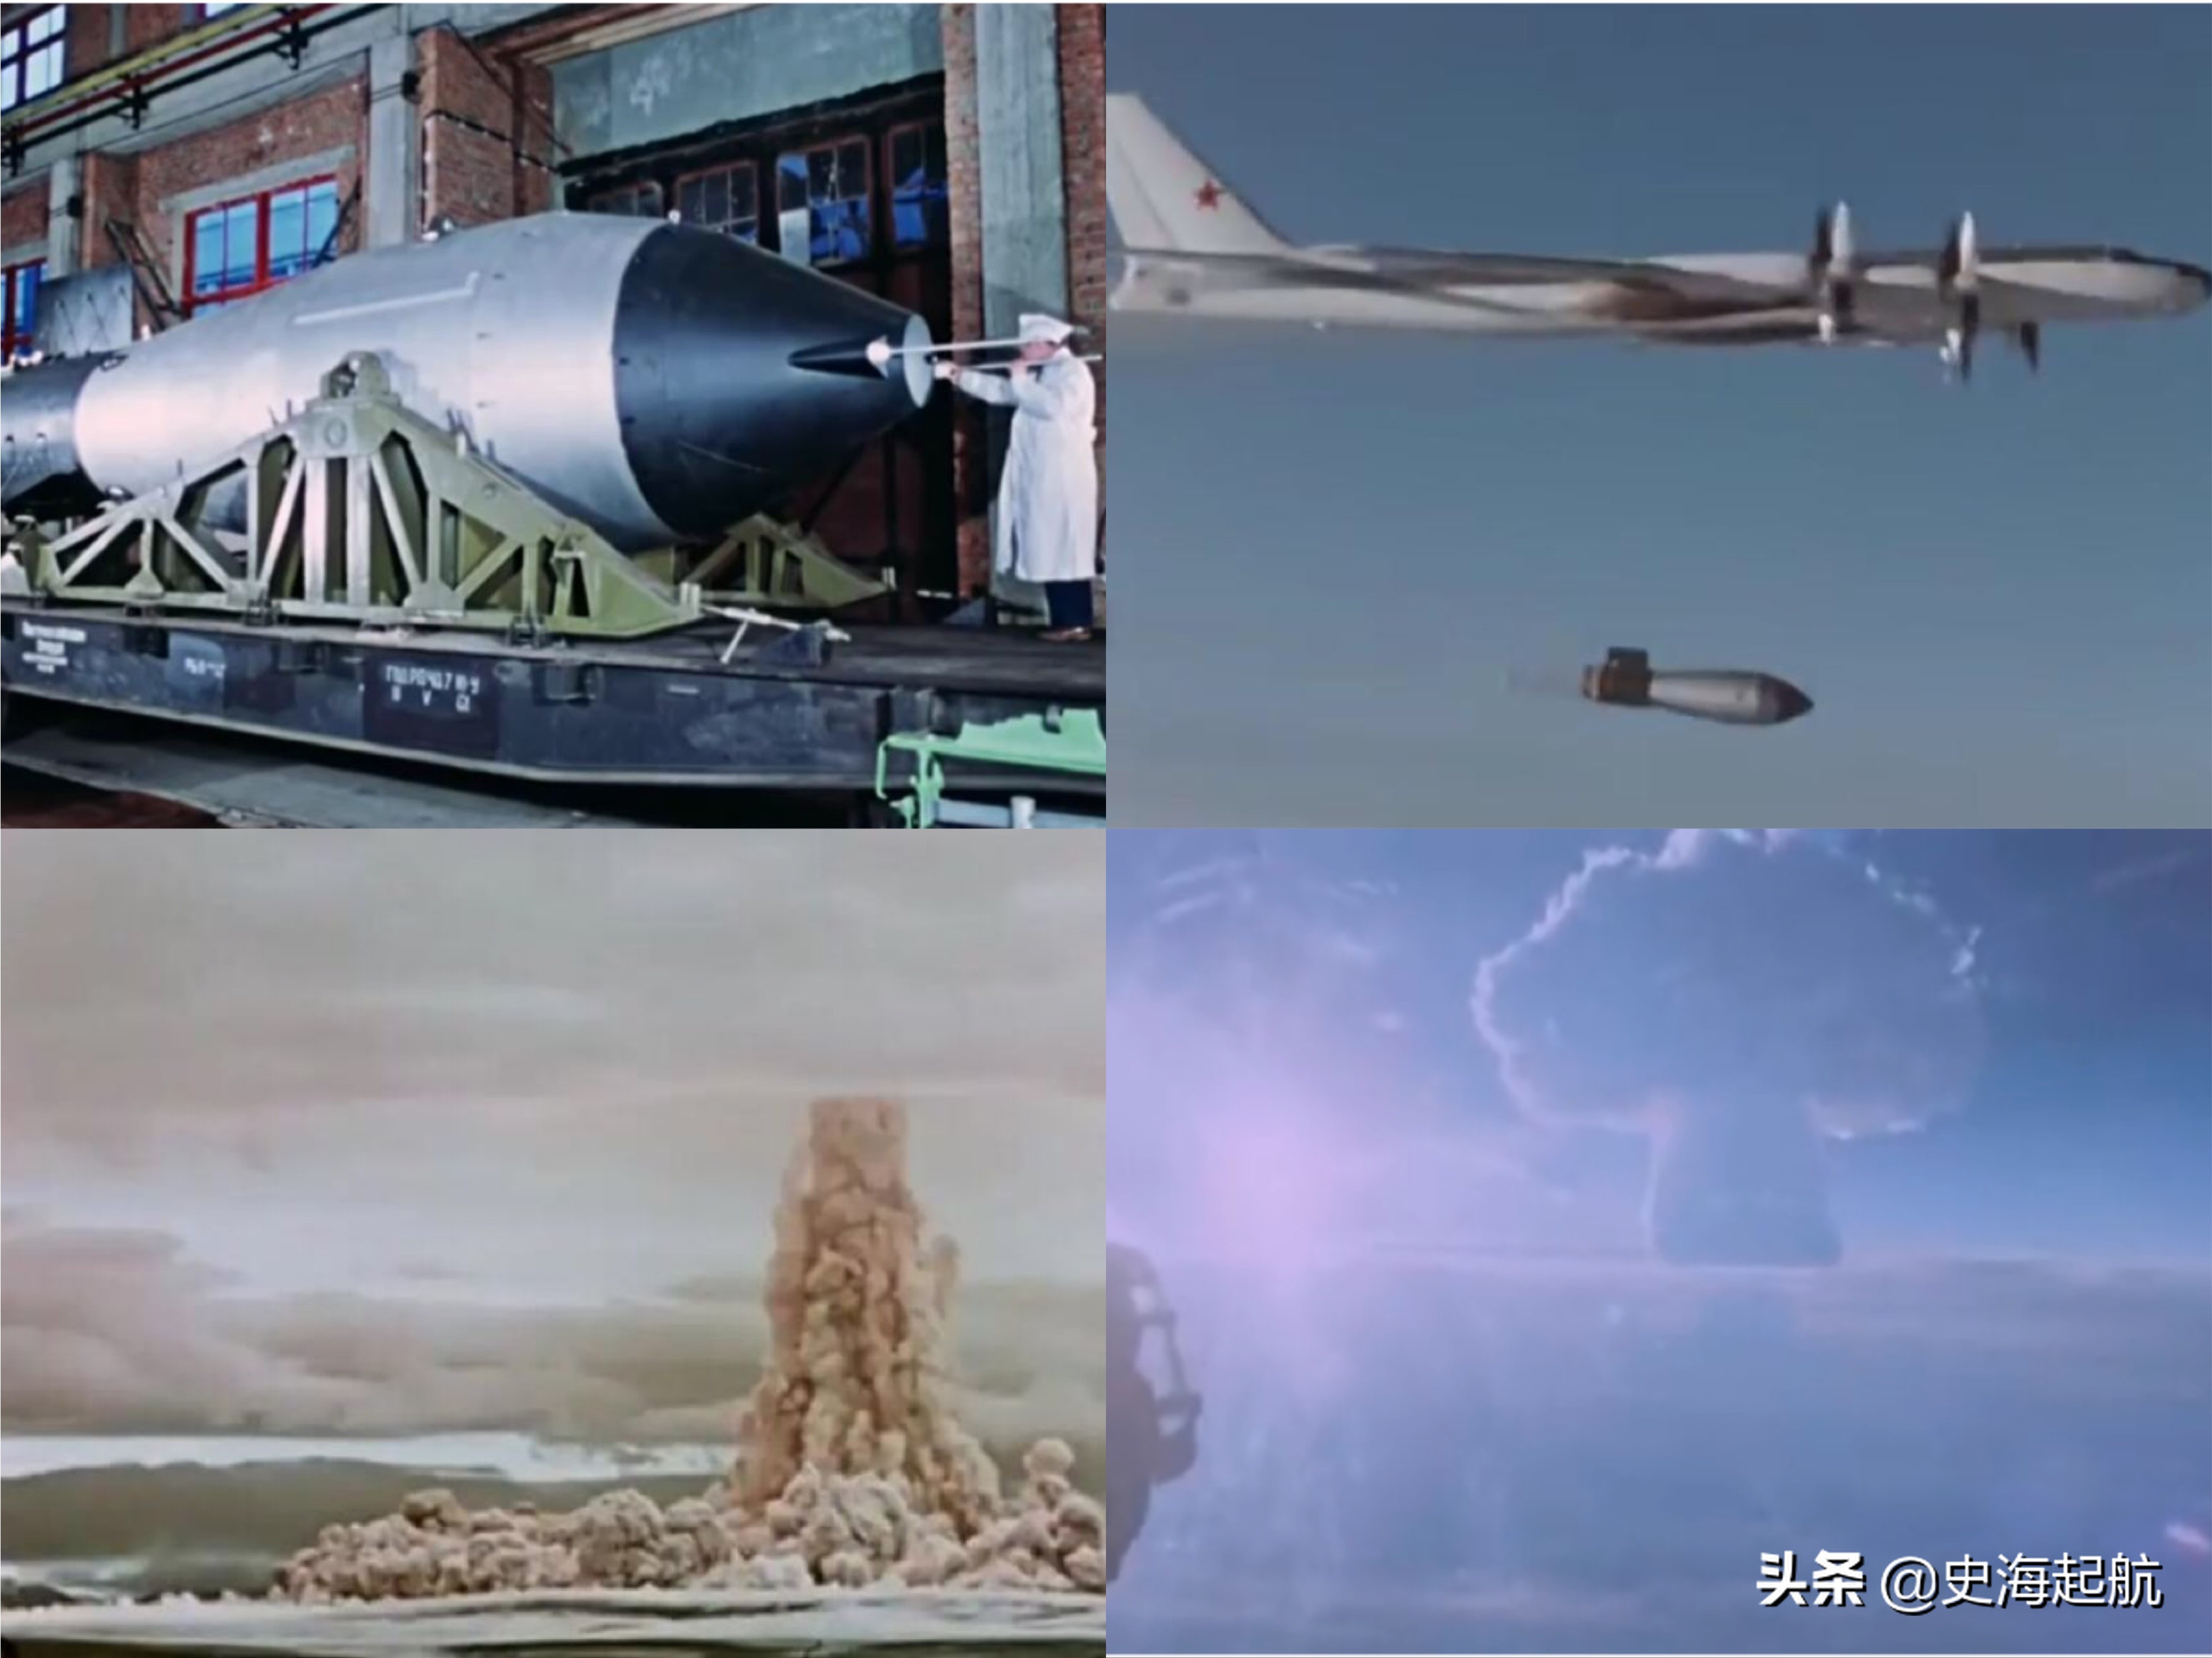 冷战时高科技武器照片：图1是B2隐身轰炸机，图4是核动力坦克